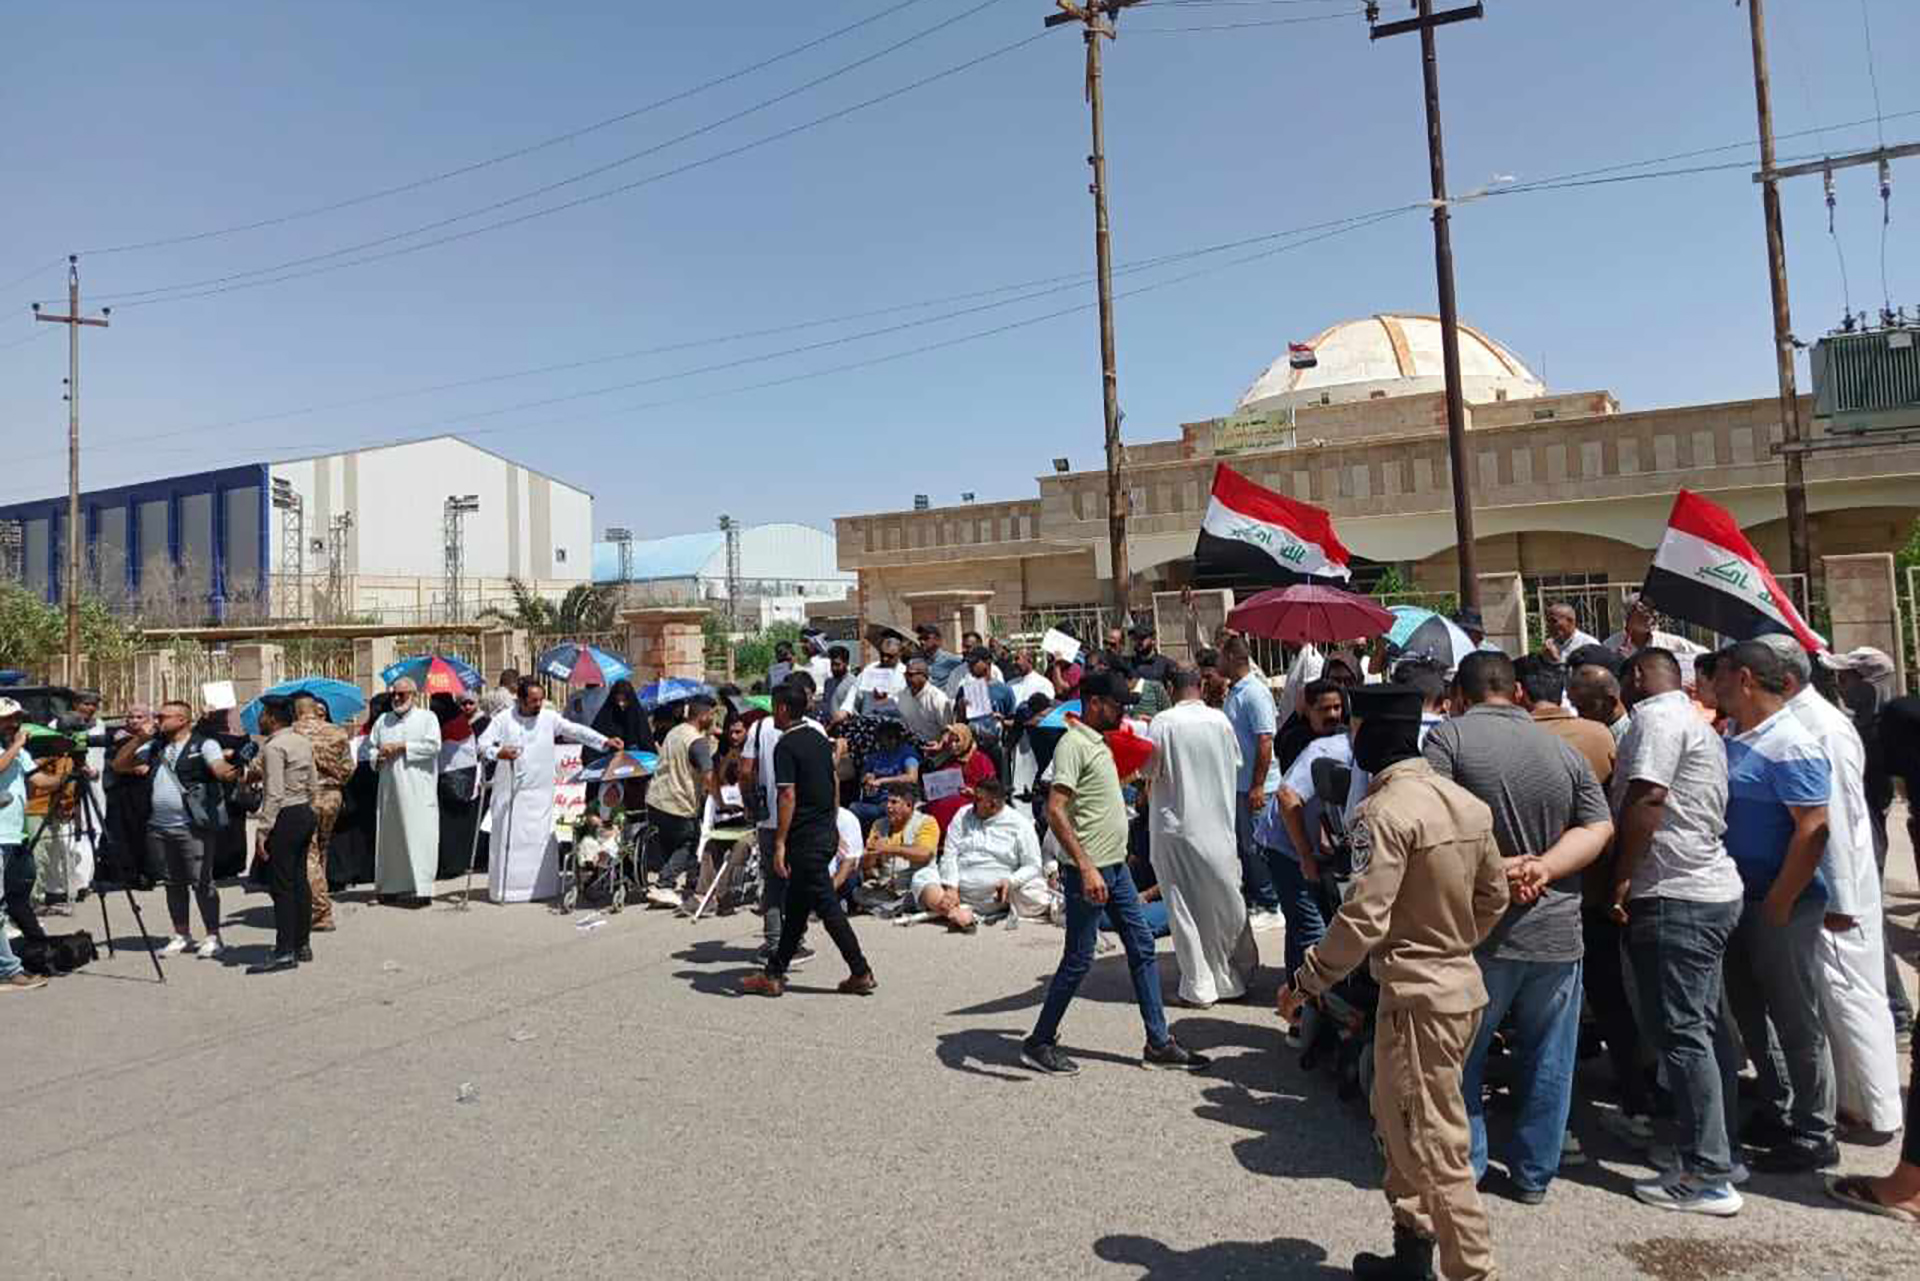 الجنوب العراقي.. حراك شعبي ينذر بتوسع الاحتجاجات على الفساد | سياسة – البوكس نيوز